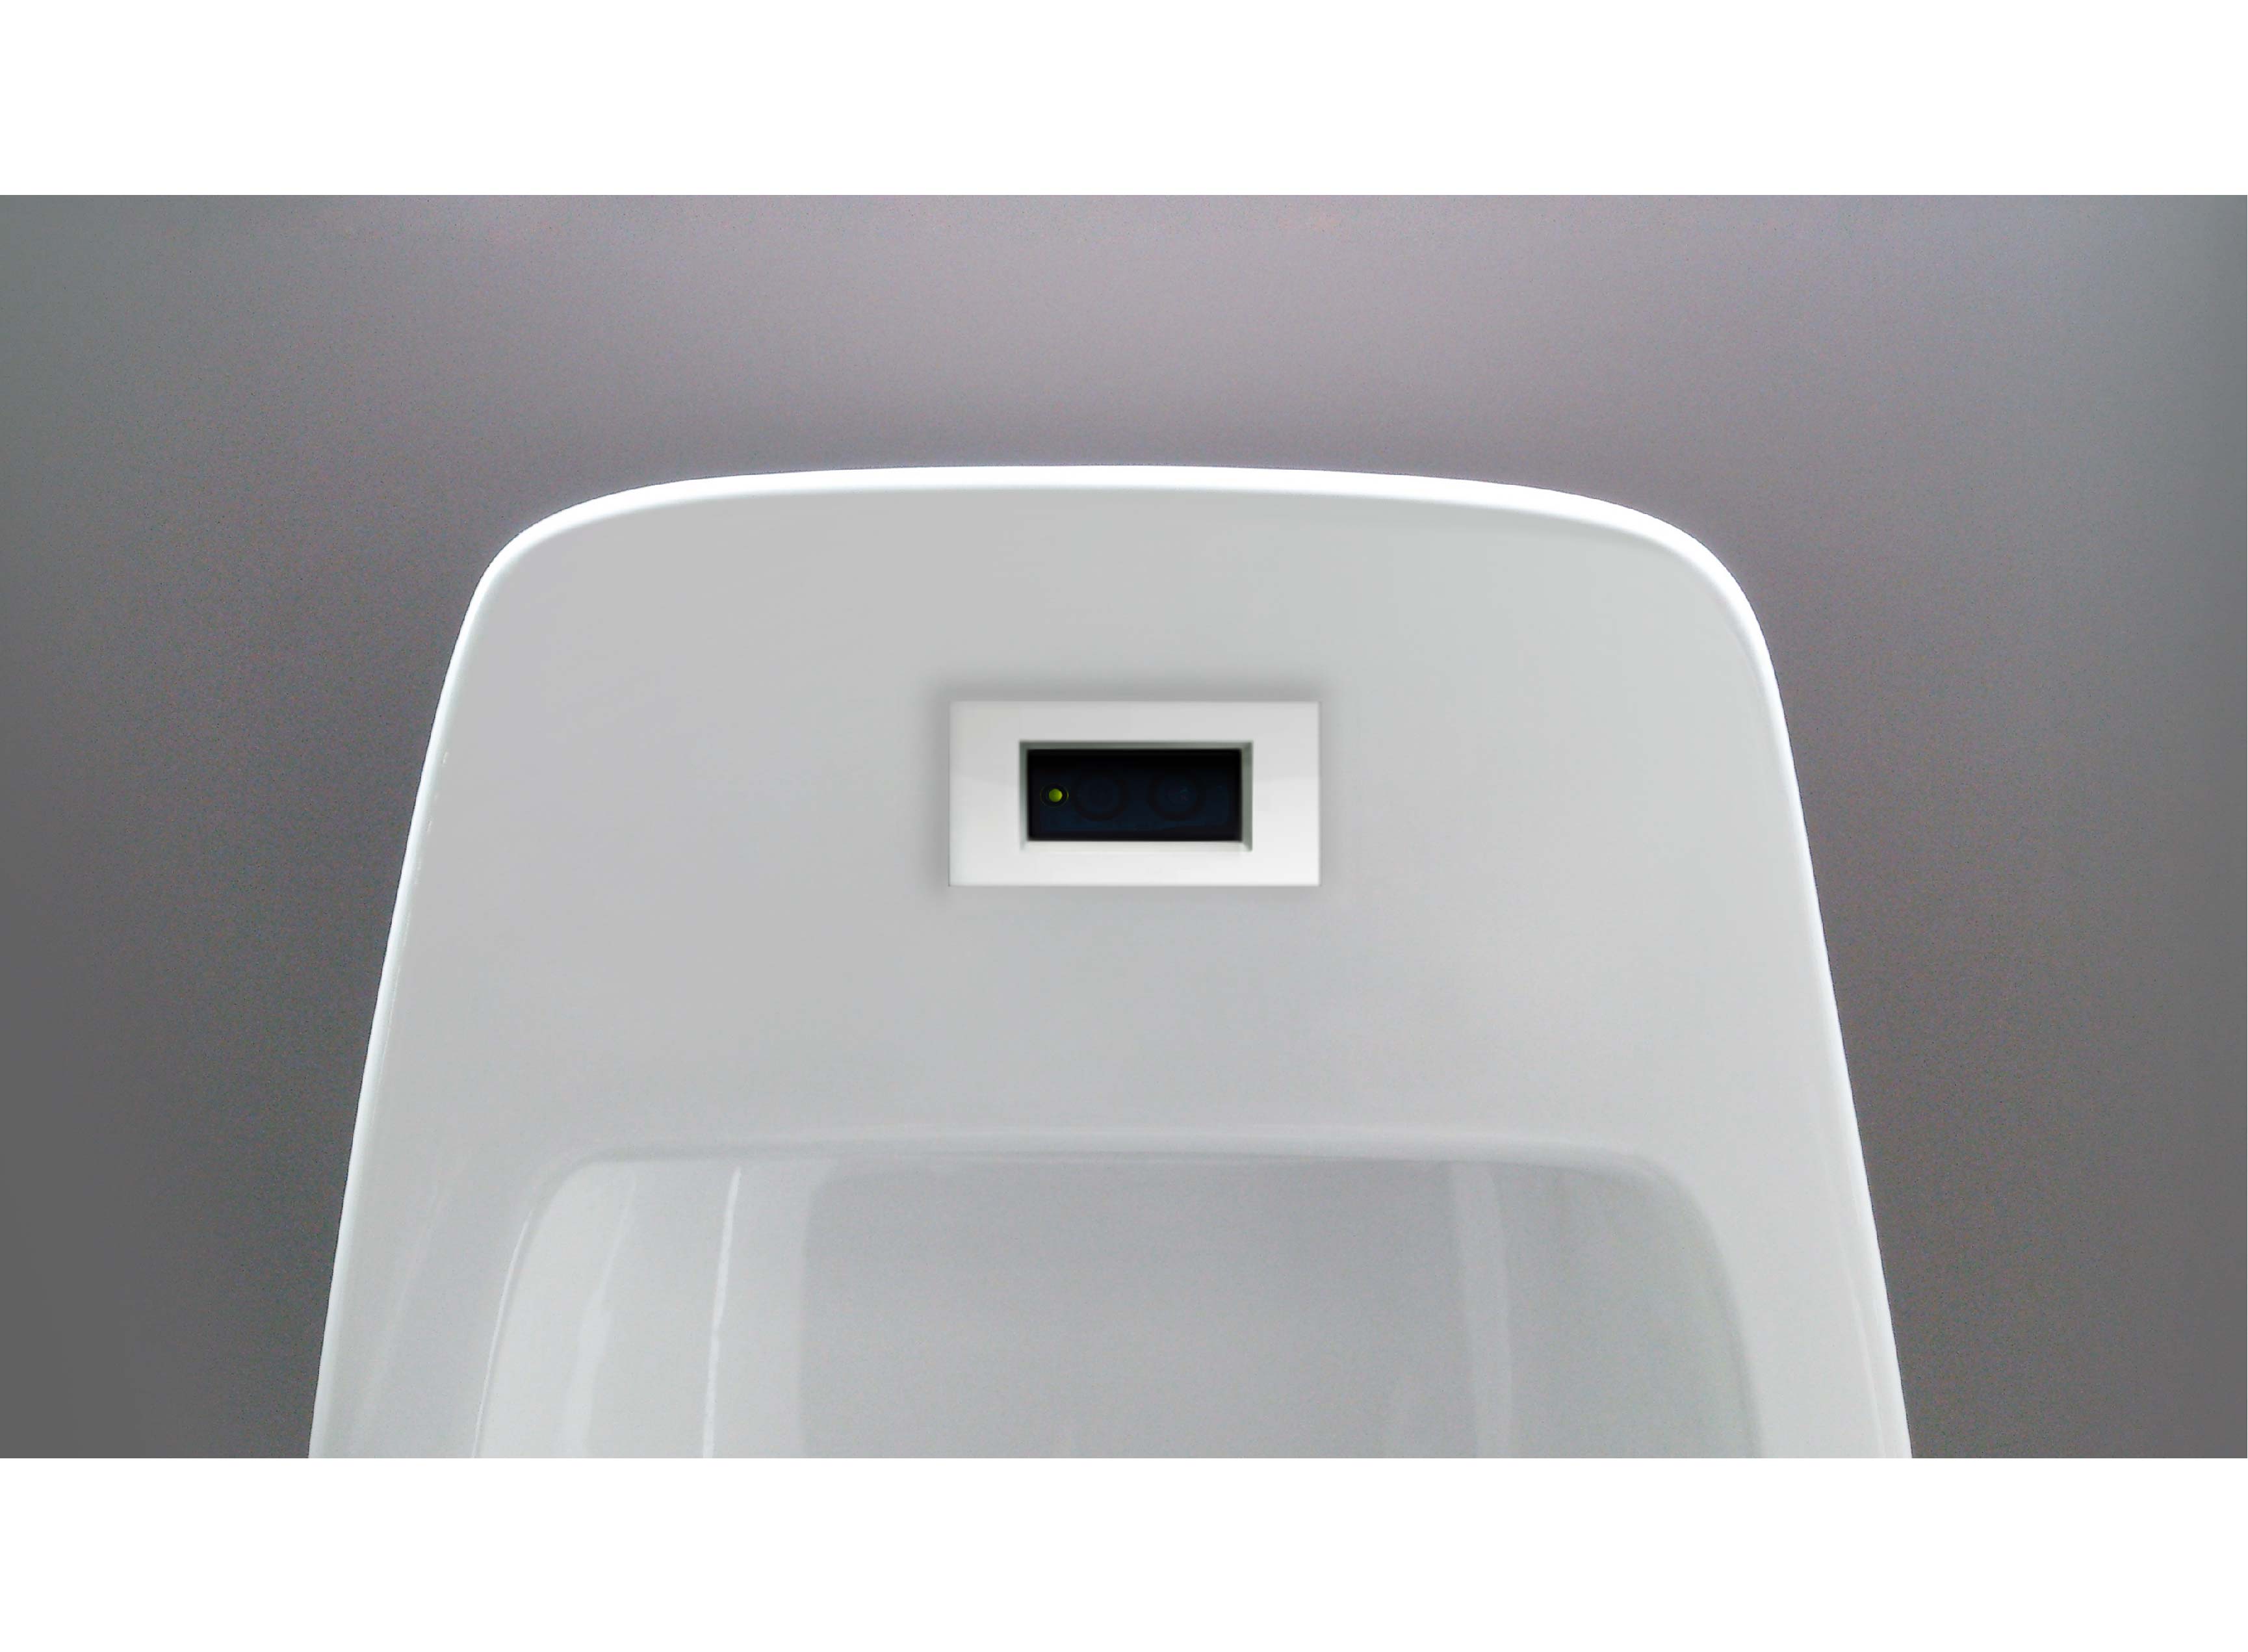 オールインワン自動洗浄装置l 361 さまざまなトイレに適したシンプルな形状 Jye Li An Technology